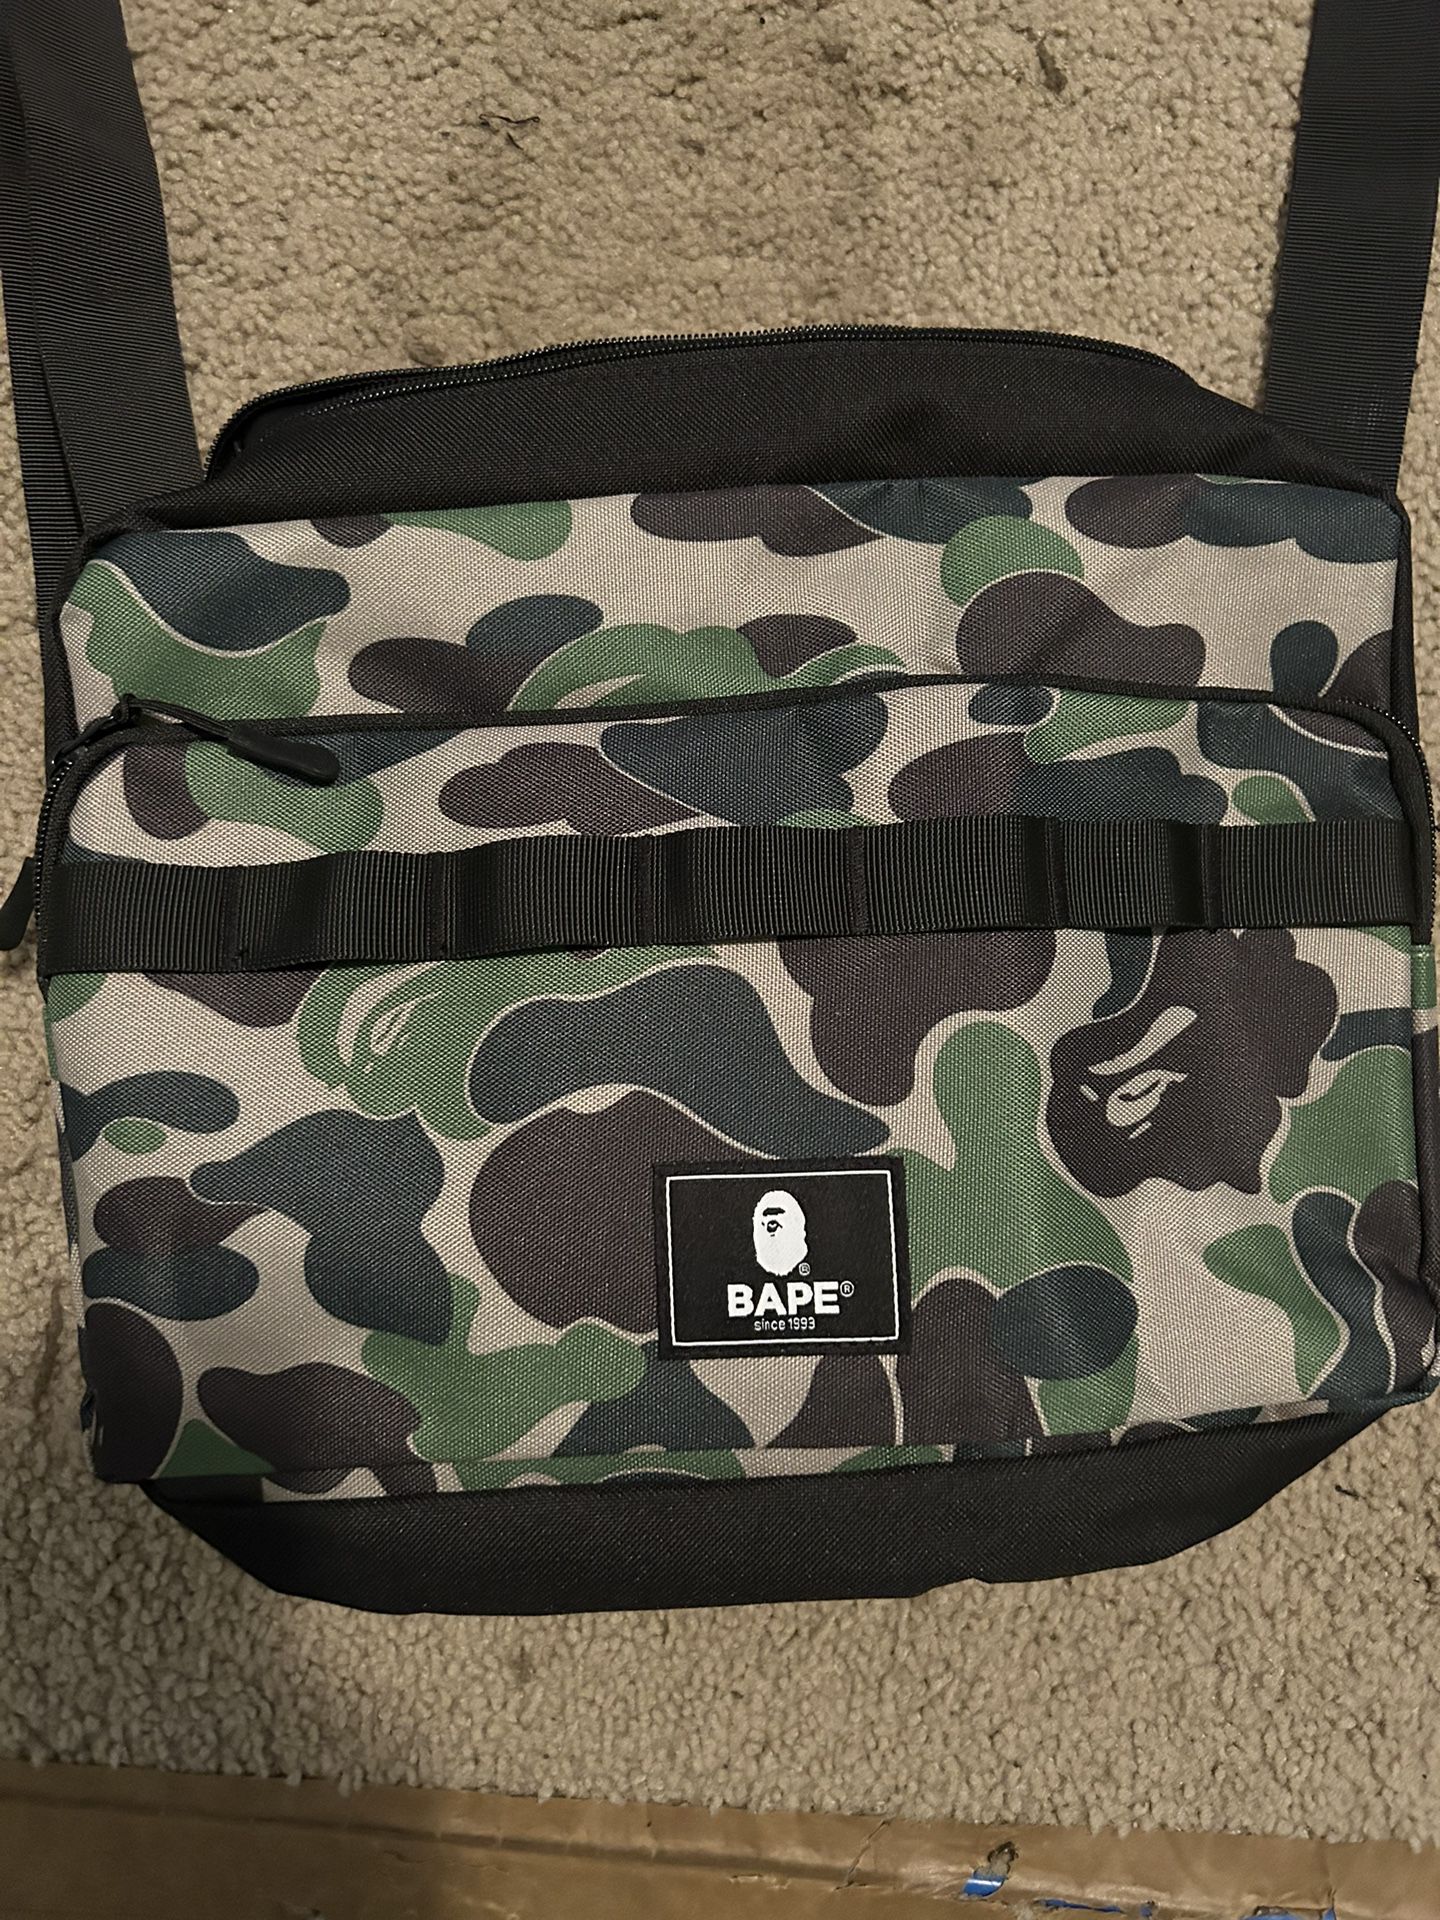 BAPE Camo Messenger Bag 